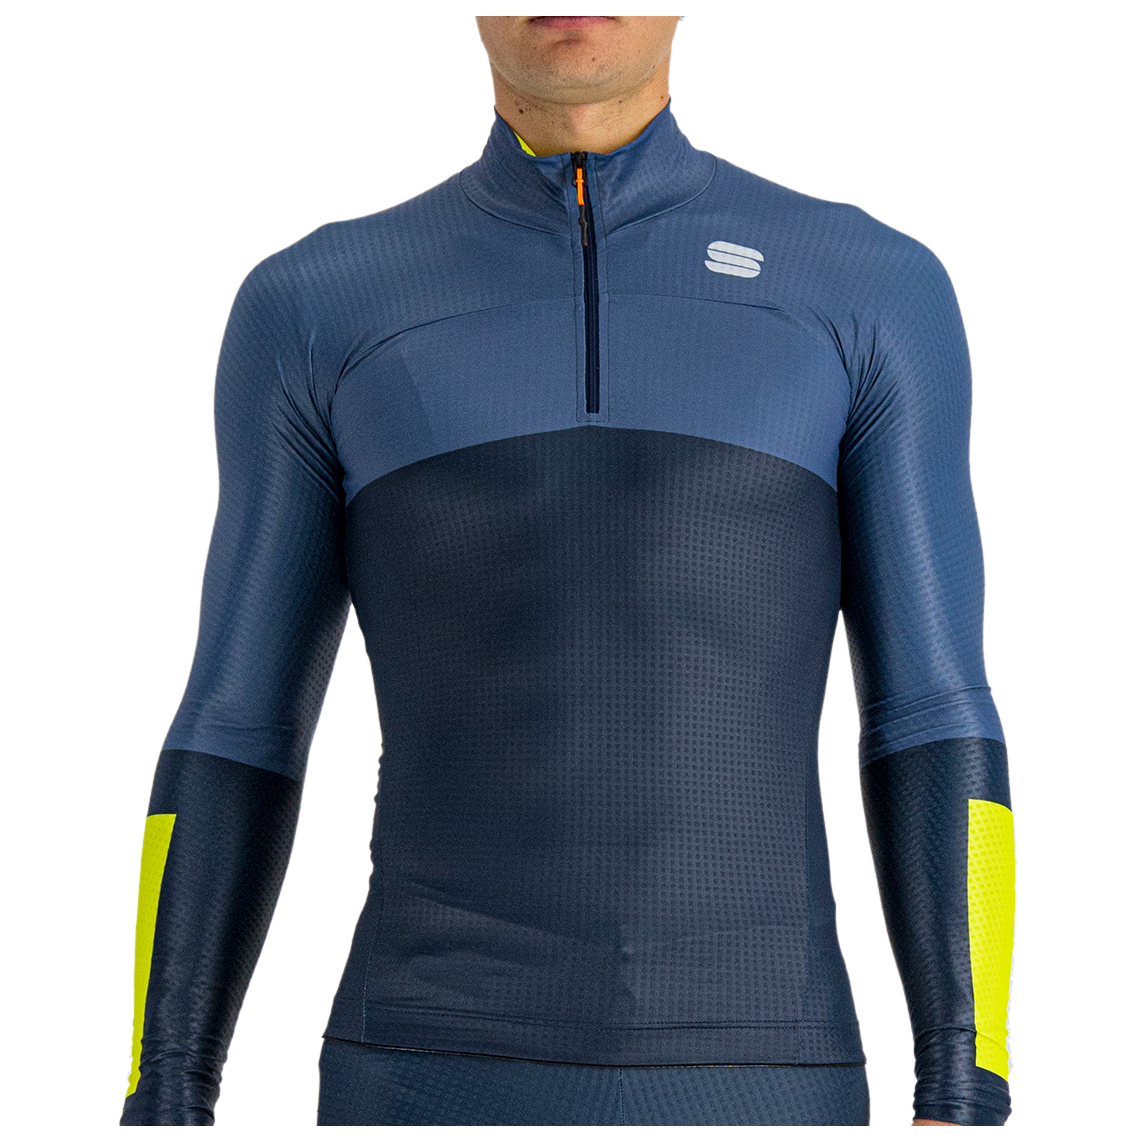 Куртка для беговых лыж Sportful Apex Jersey, цвет Galaxy Blue/Avio